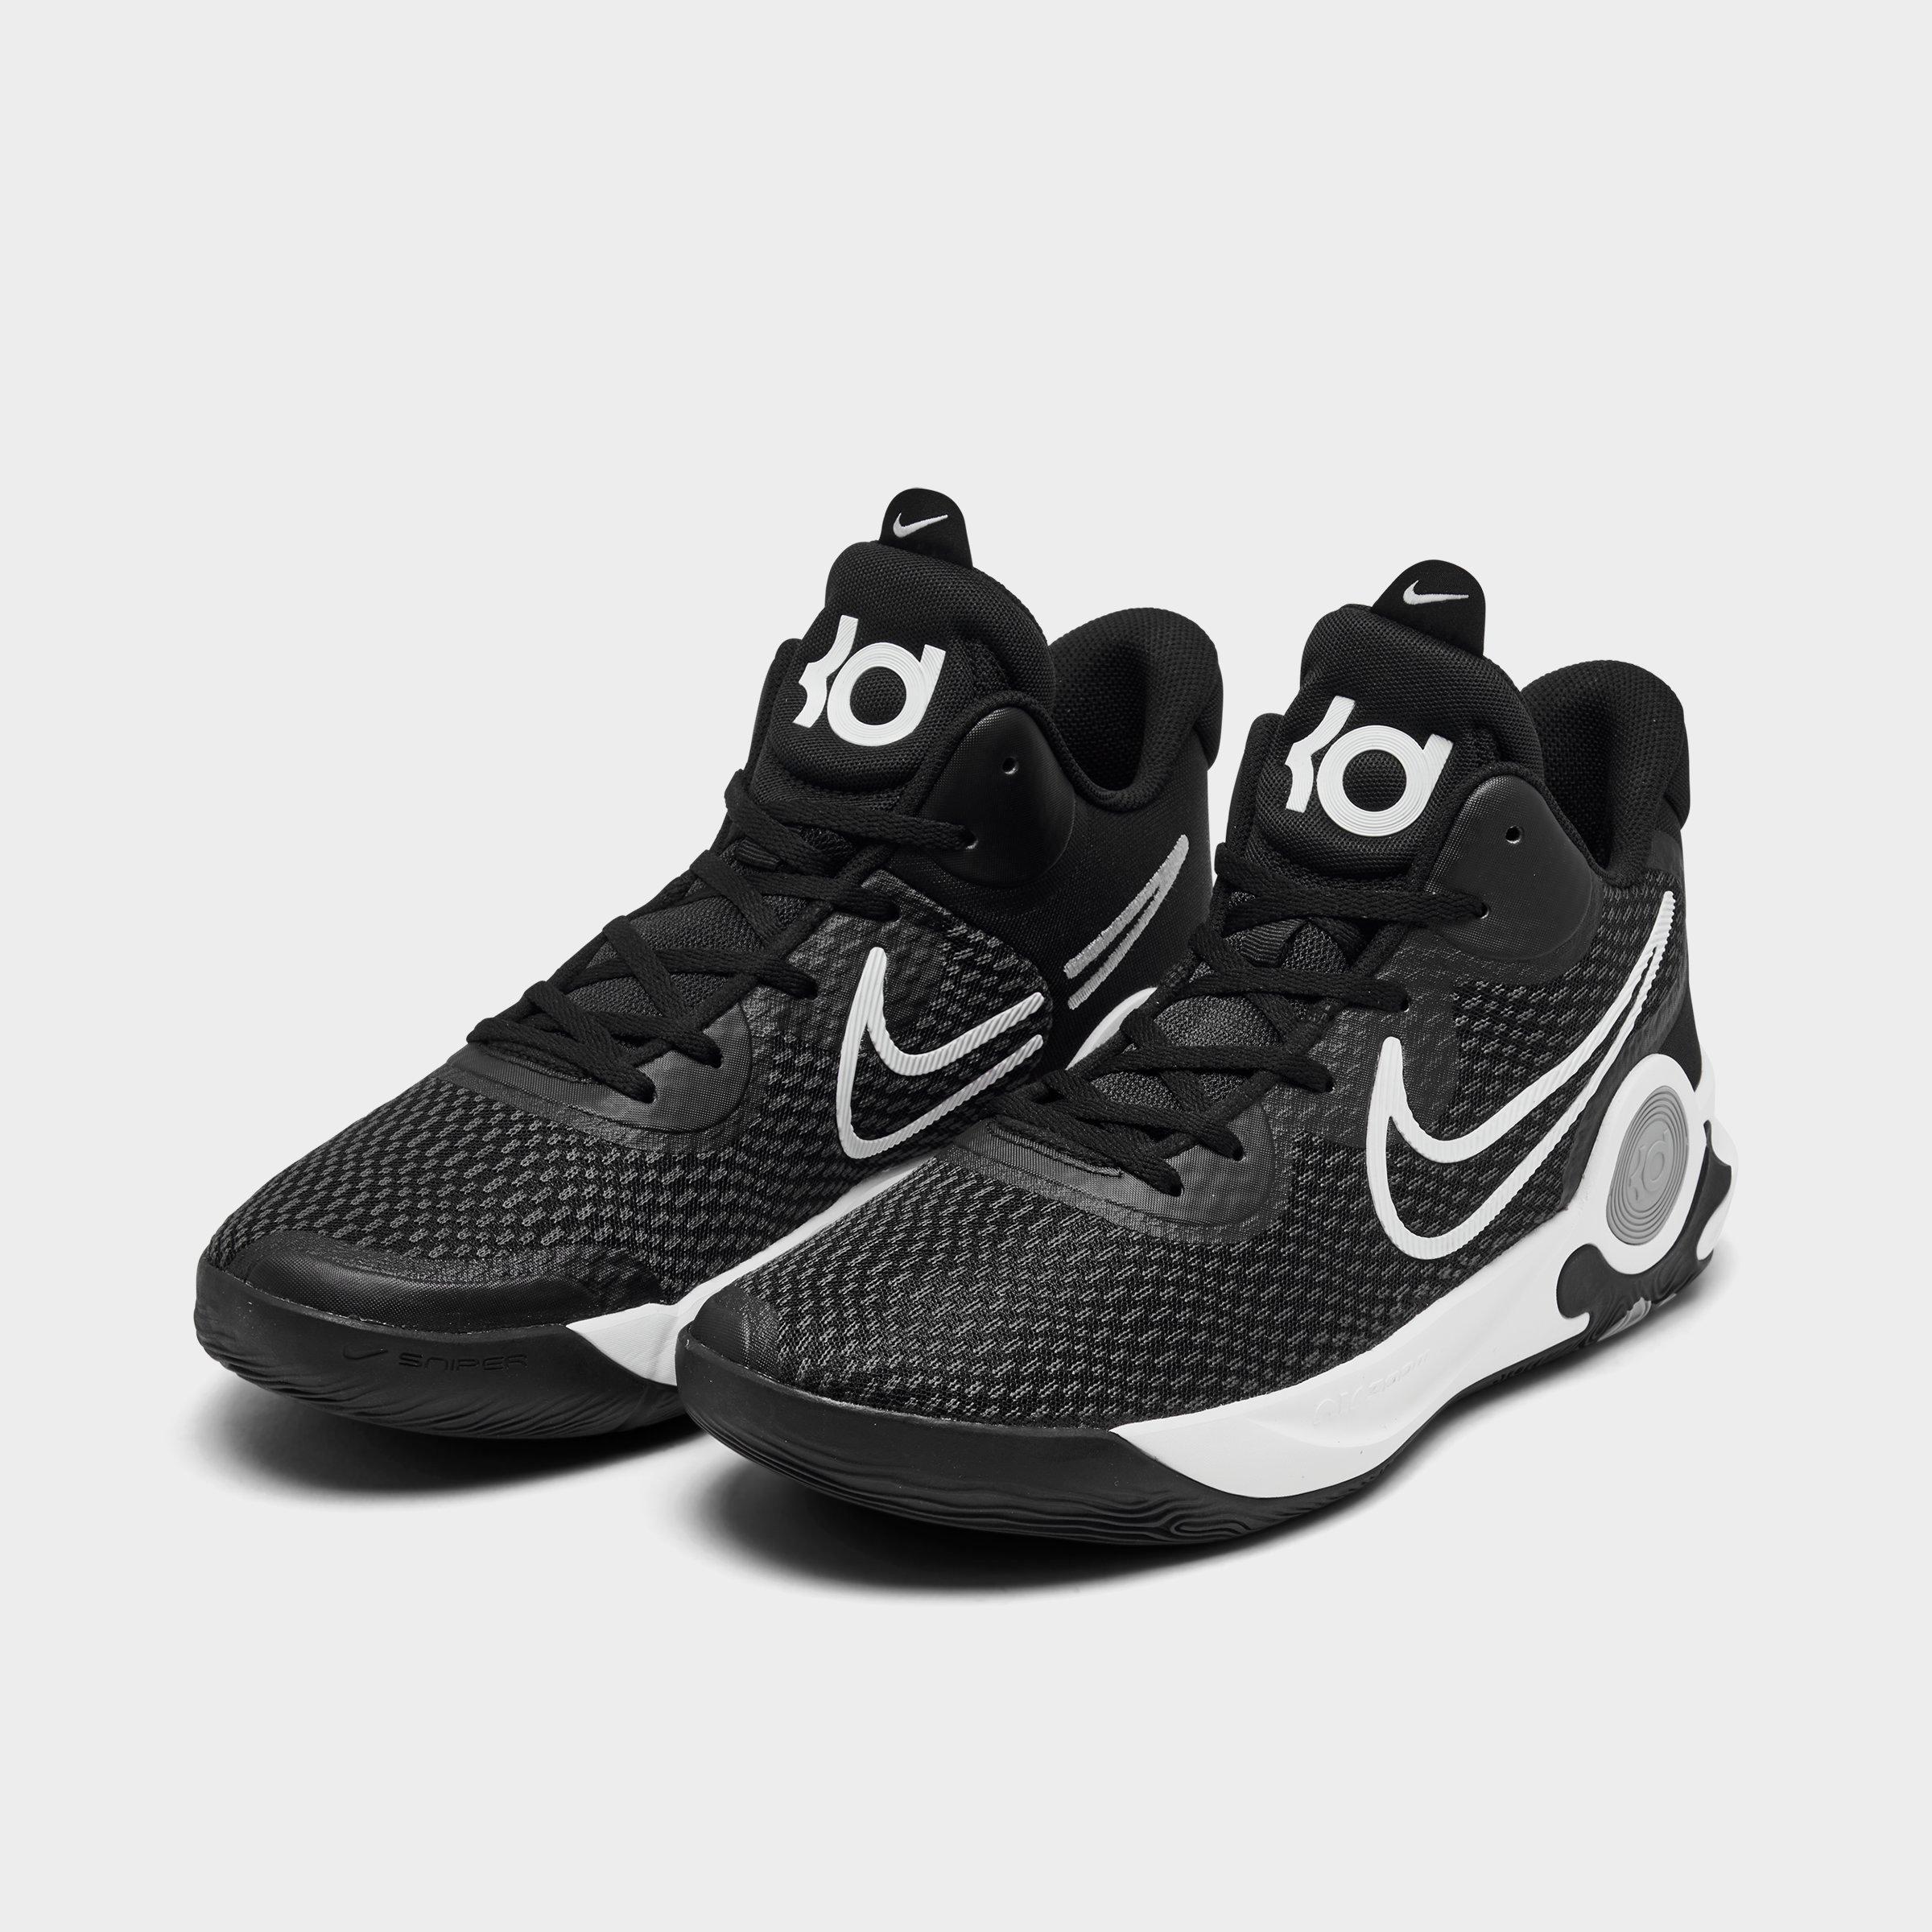 Giày Bóng Rổ Chính Hãng Nike KD Trey 5 IX Basketball Black - CW3400-002